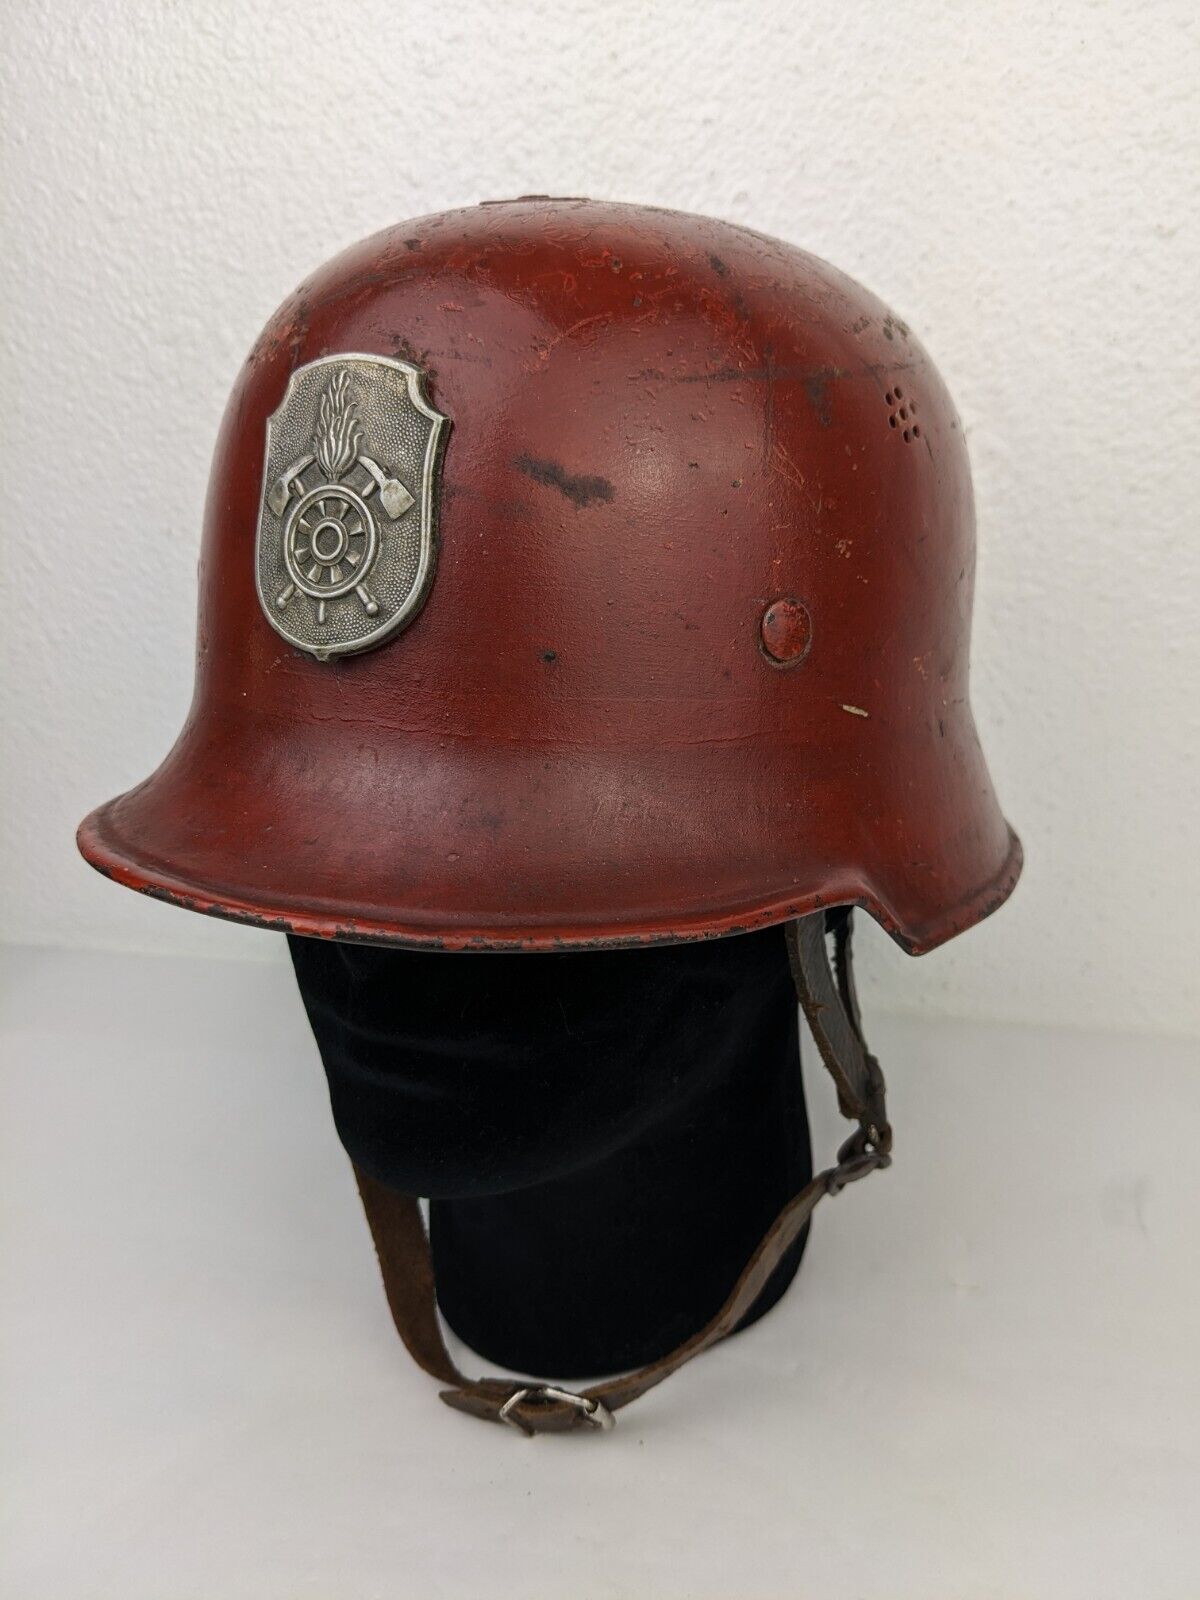 Rare Vtg WWII German M34 Red Fire Fighter Helmet Insignia Feuerwehr Weisskoppel